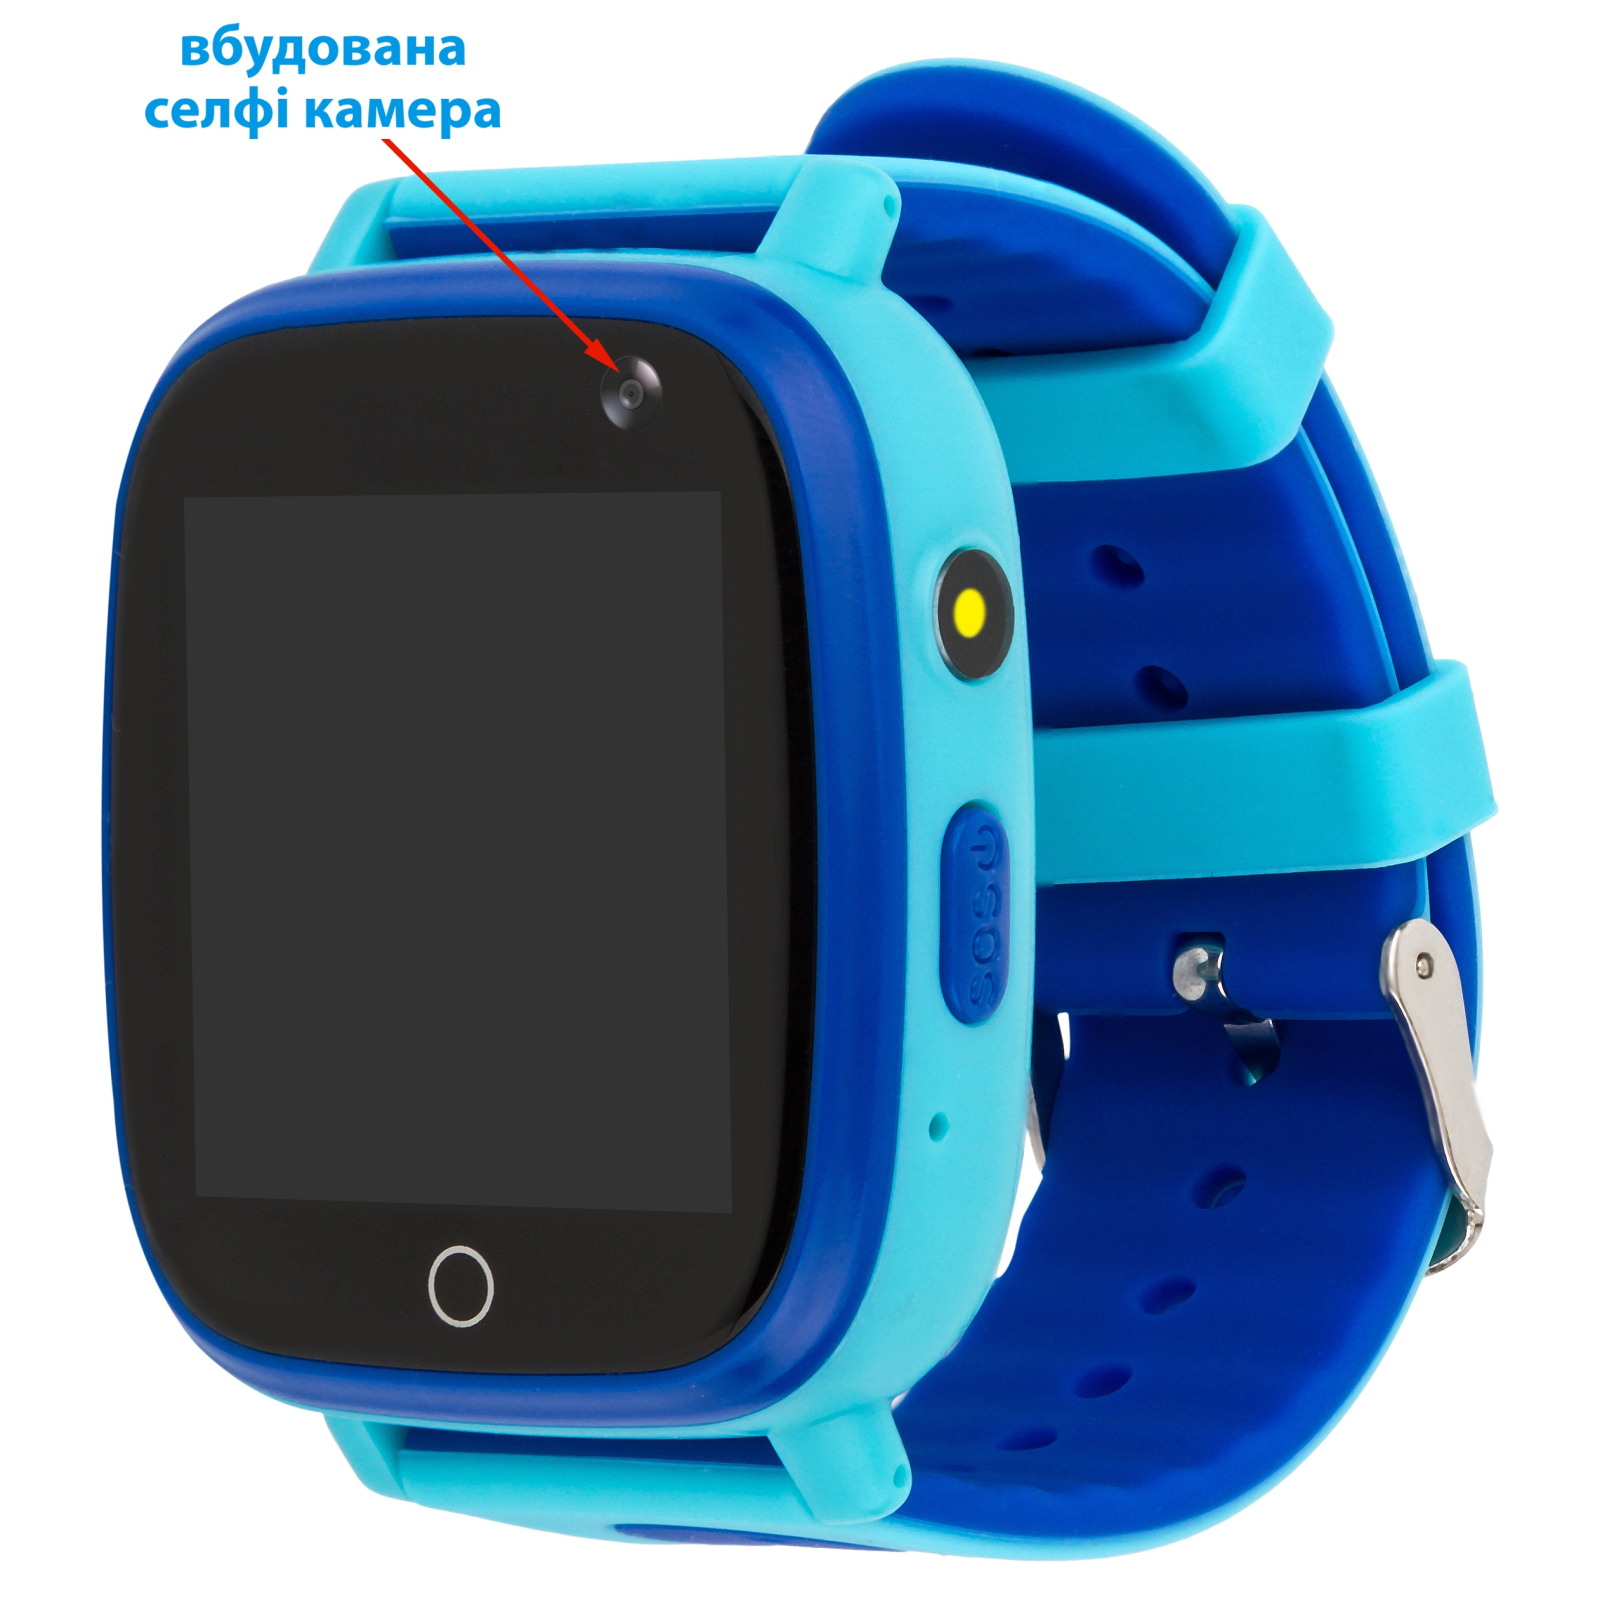 Смарт-часы Amigo GO001 iP67 Black (856057) изображение 8